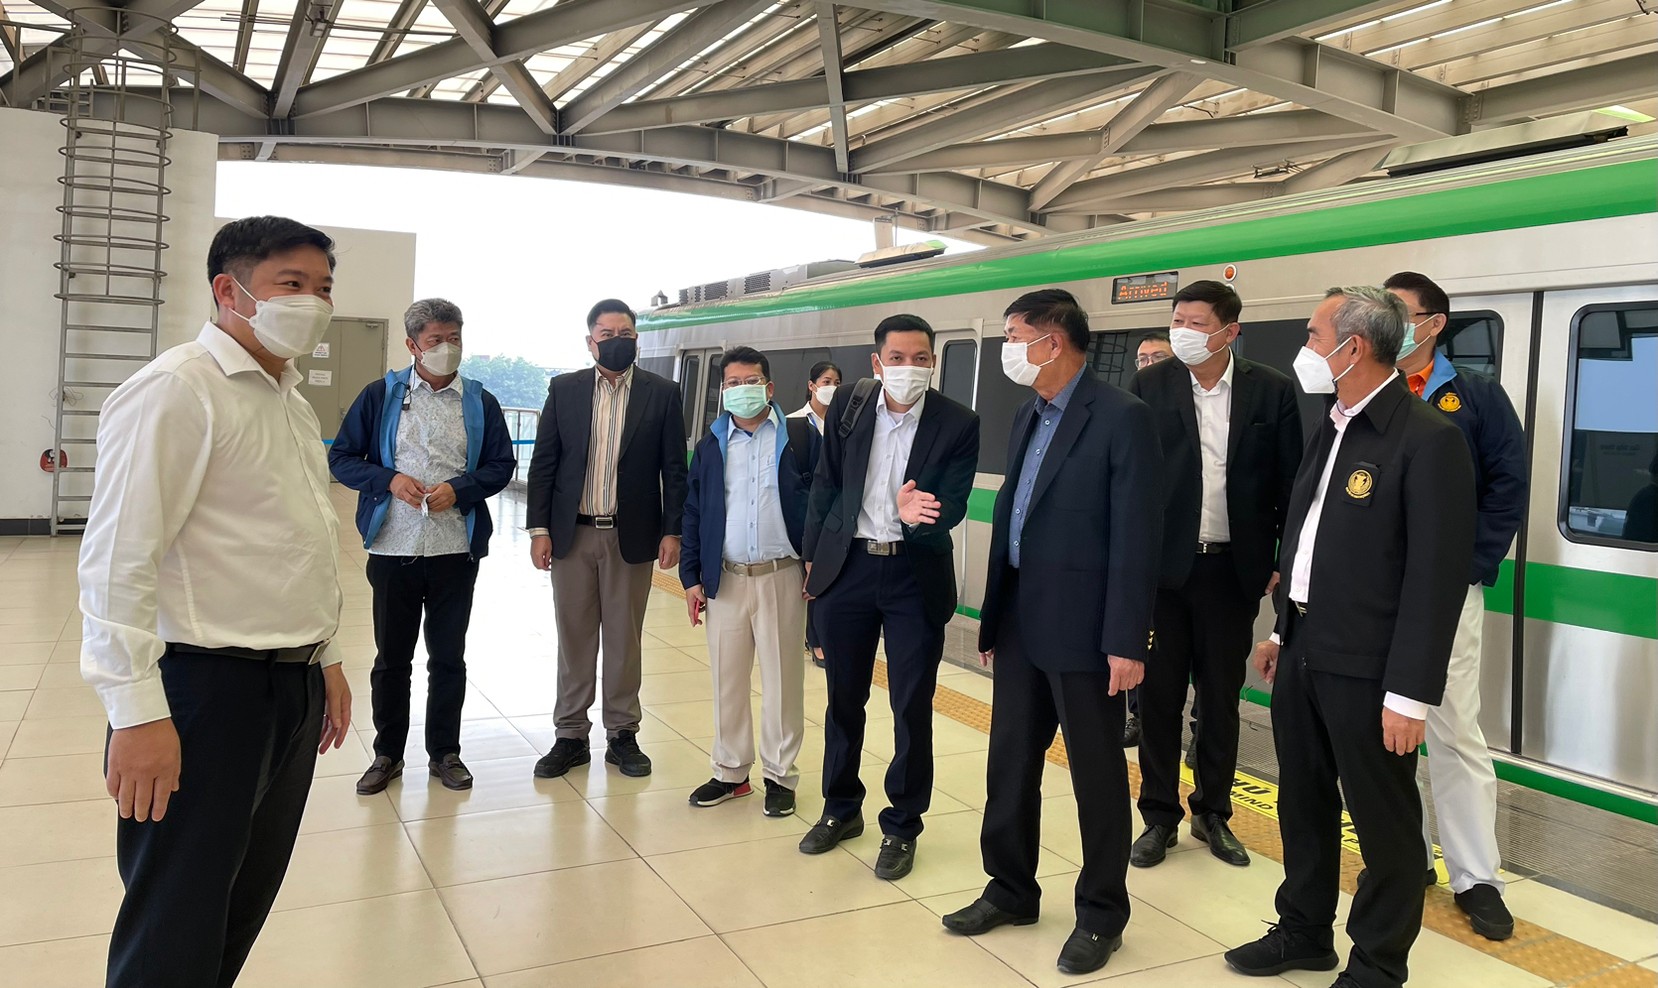 ประชุมทวิภาคีร่วมกับผู้บริหารและเจ้าหน้าที่ระดับสูงของ Hanoi Metro Company ซึ่งเป็นผู้ประกอบการเดินรถไฟฟ้าสายสีเขียว เส้นทาง 2A Cat Linh - Ha Dong